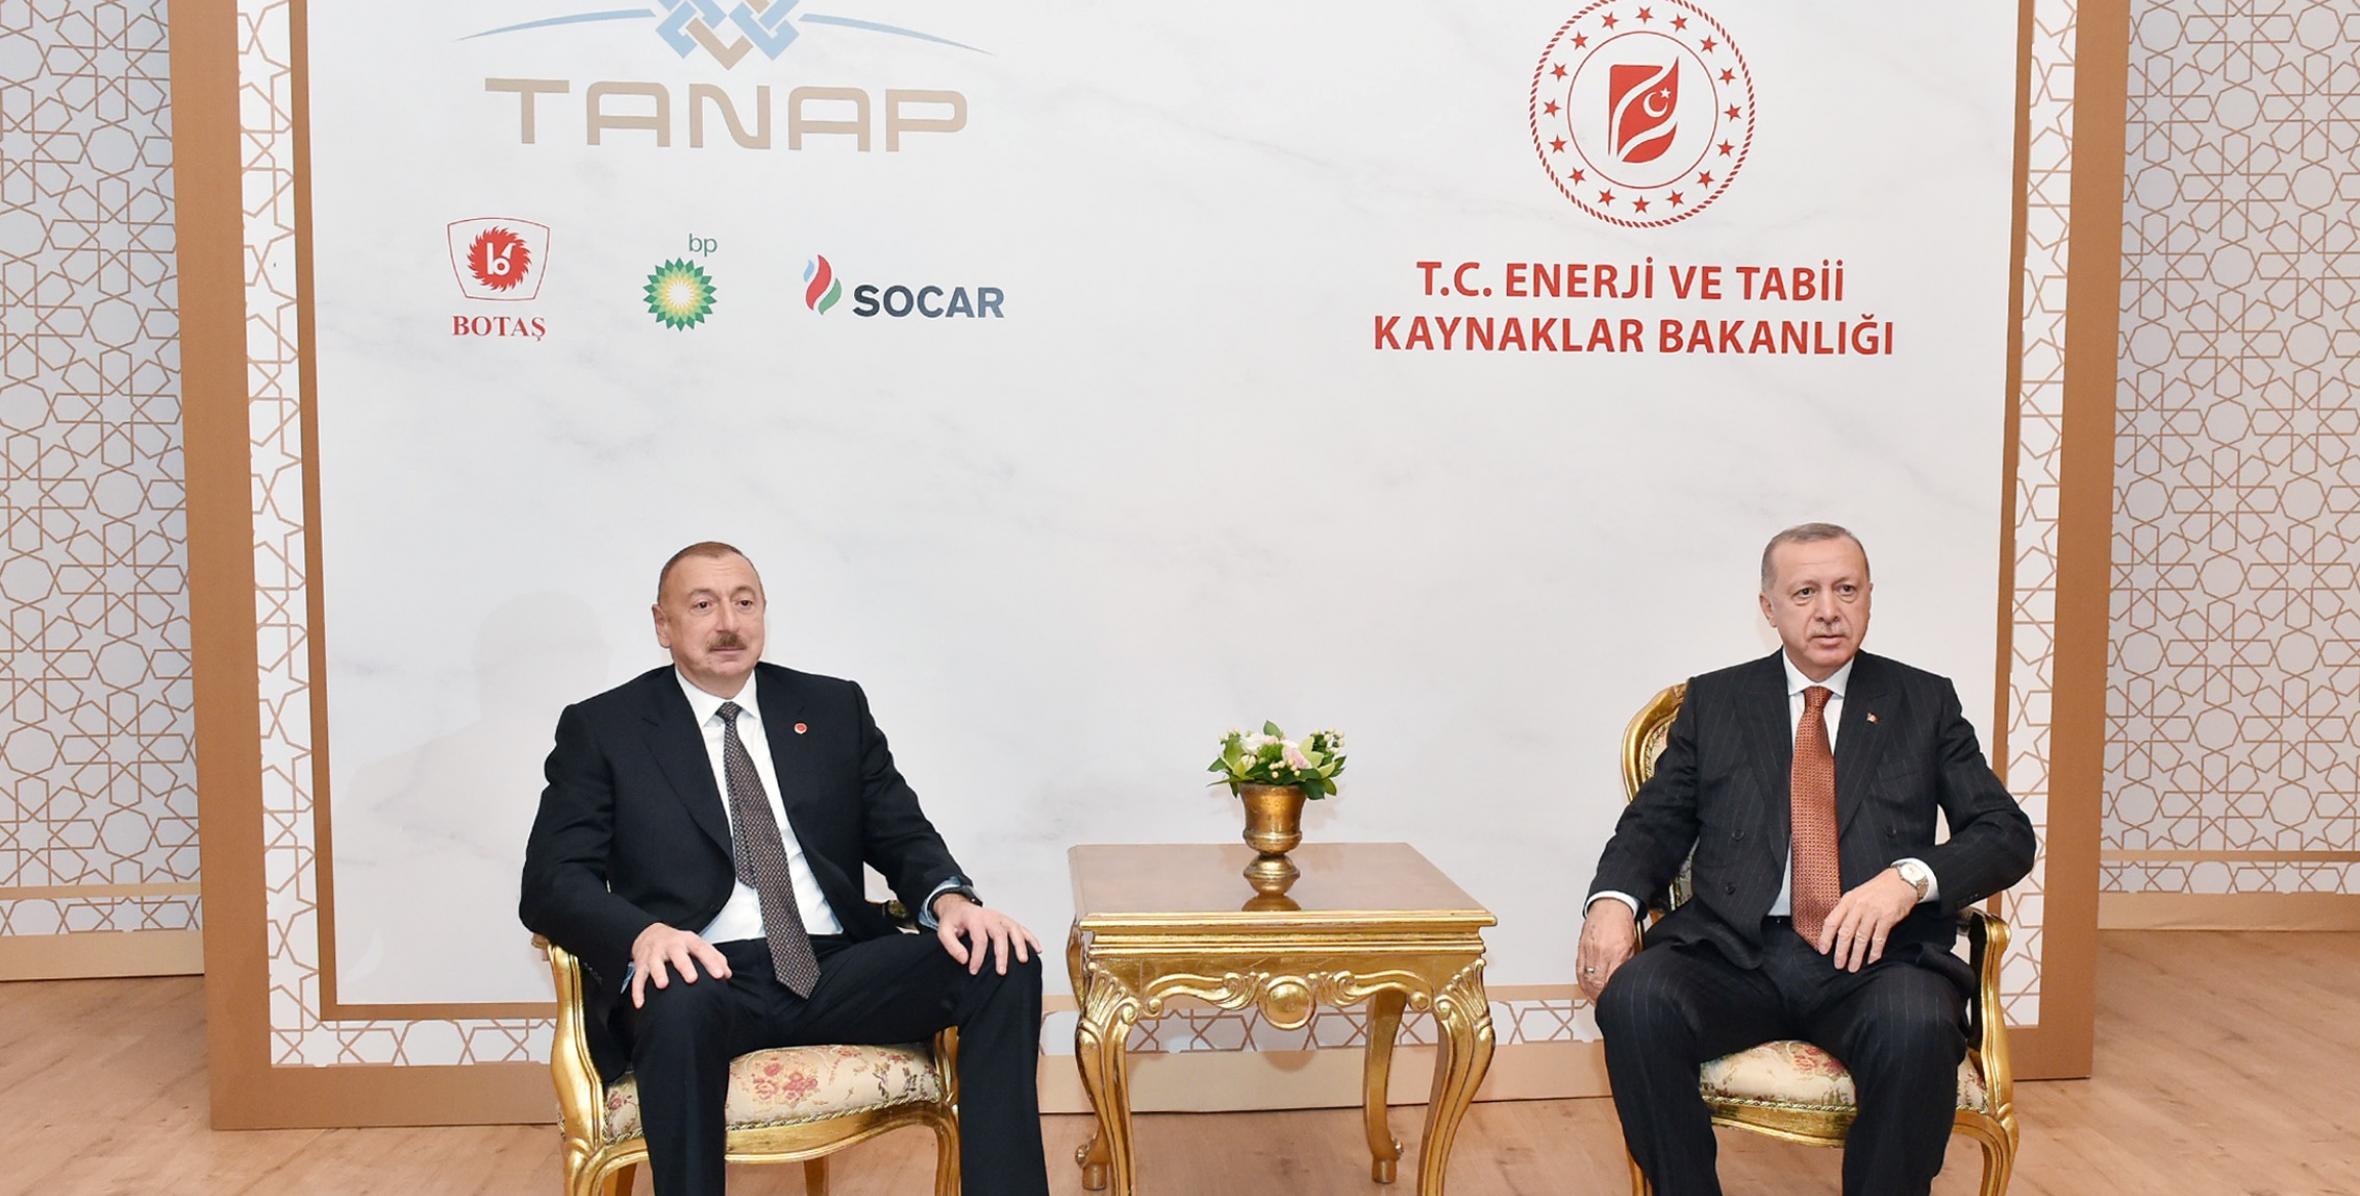 Состоялась встреча Ильхама Алиева и Президента Турции Реджепа Тайипа Эрдогана